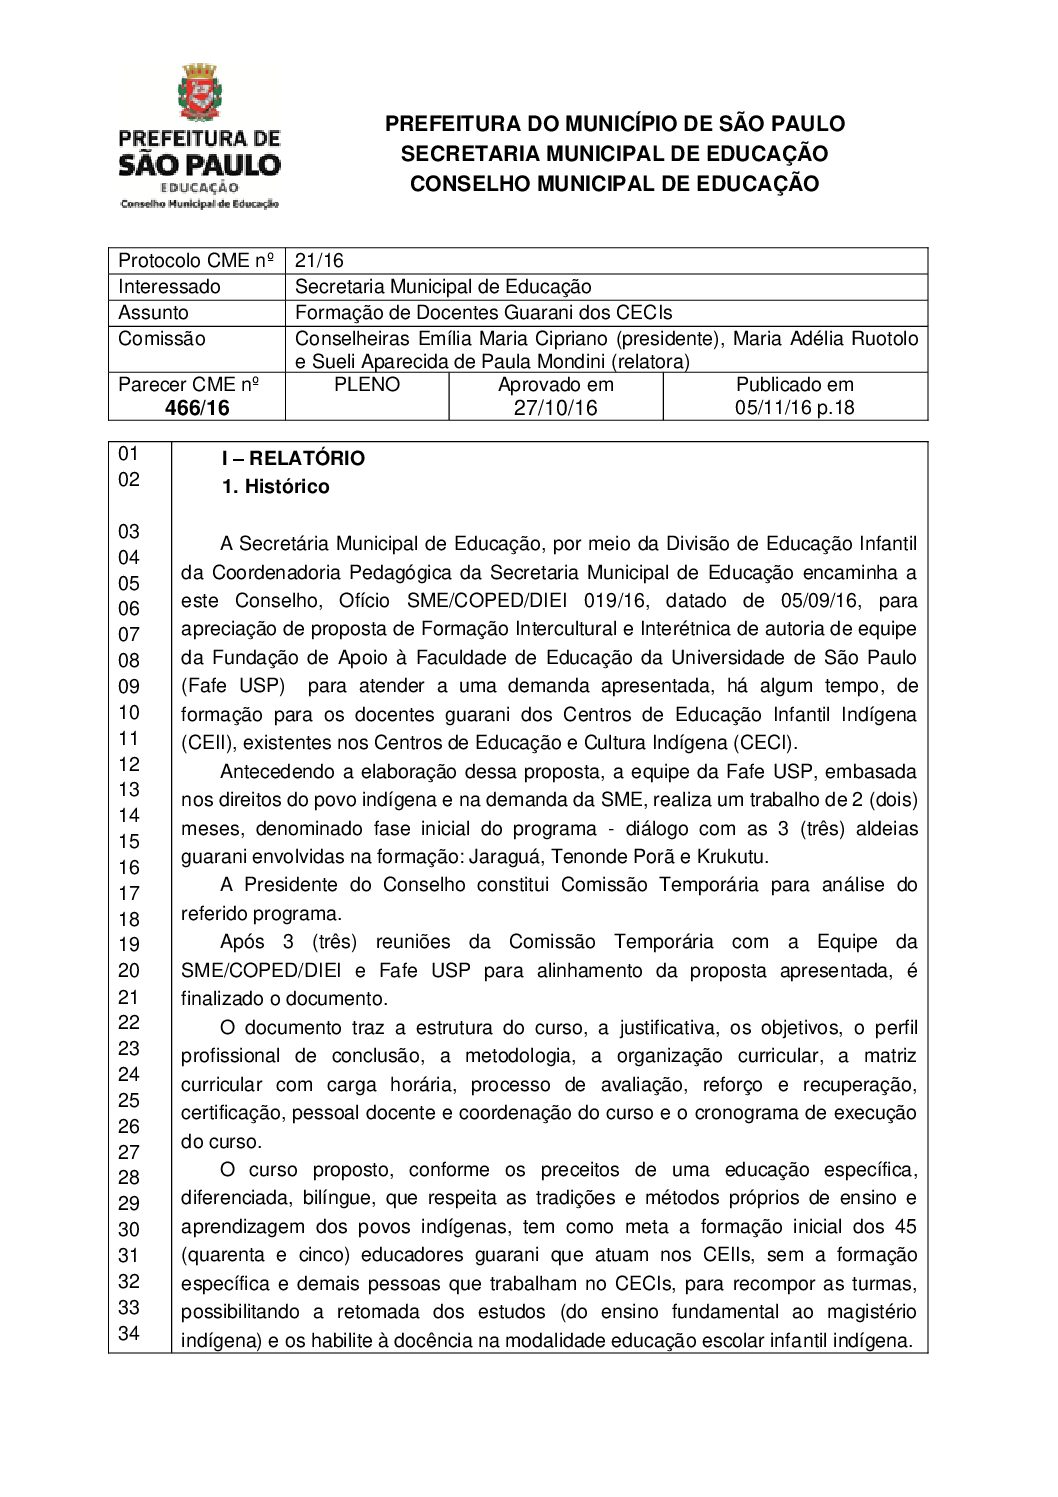 Parecer CME nº 466/2016 - Formação de Docentes Guarani dos CECIs 